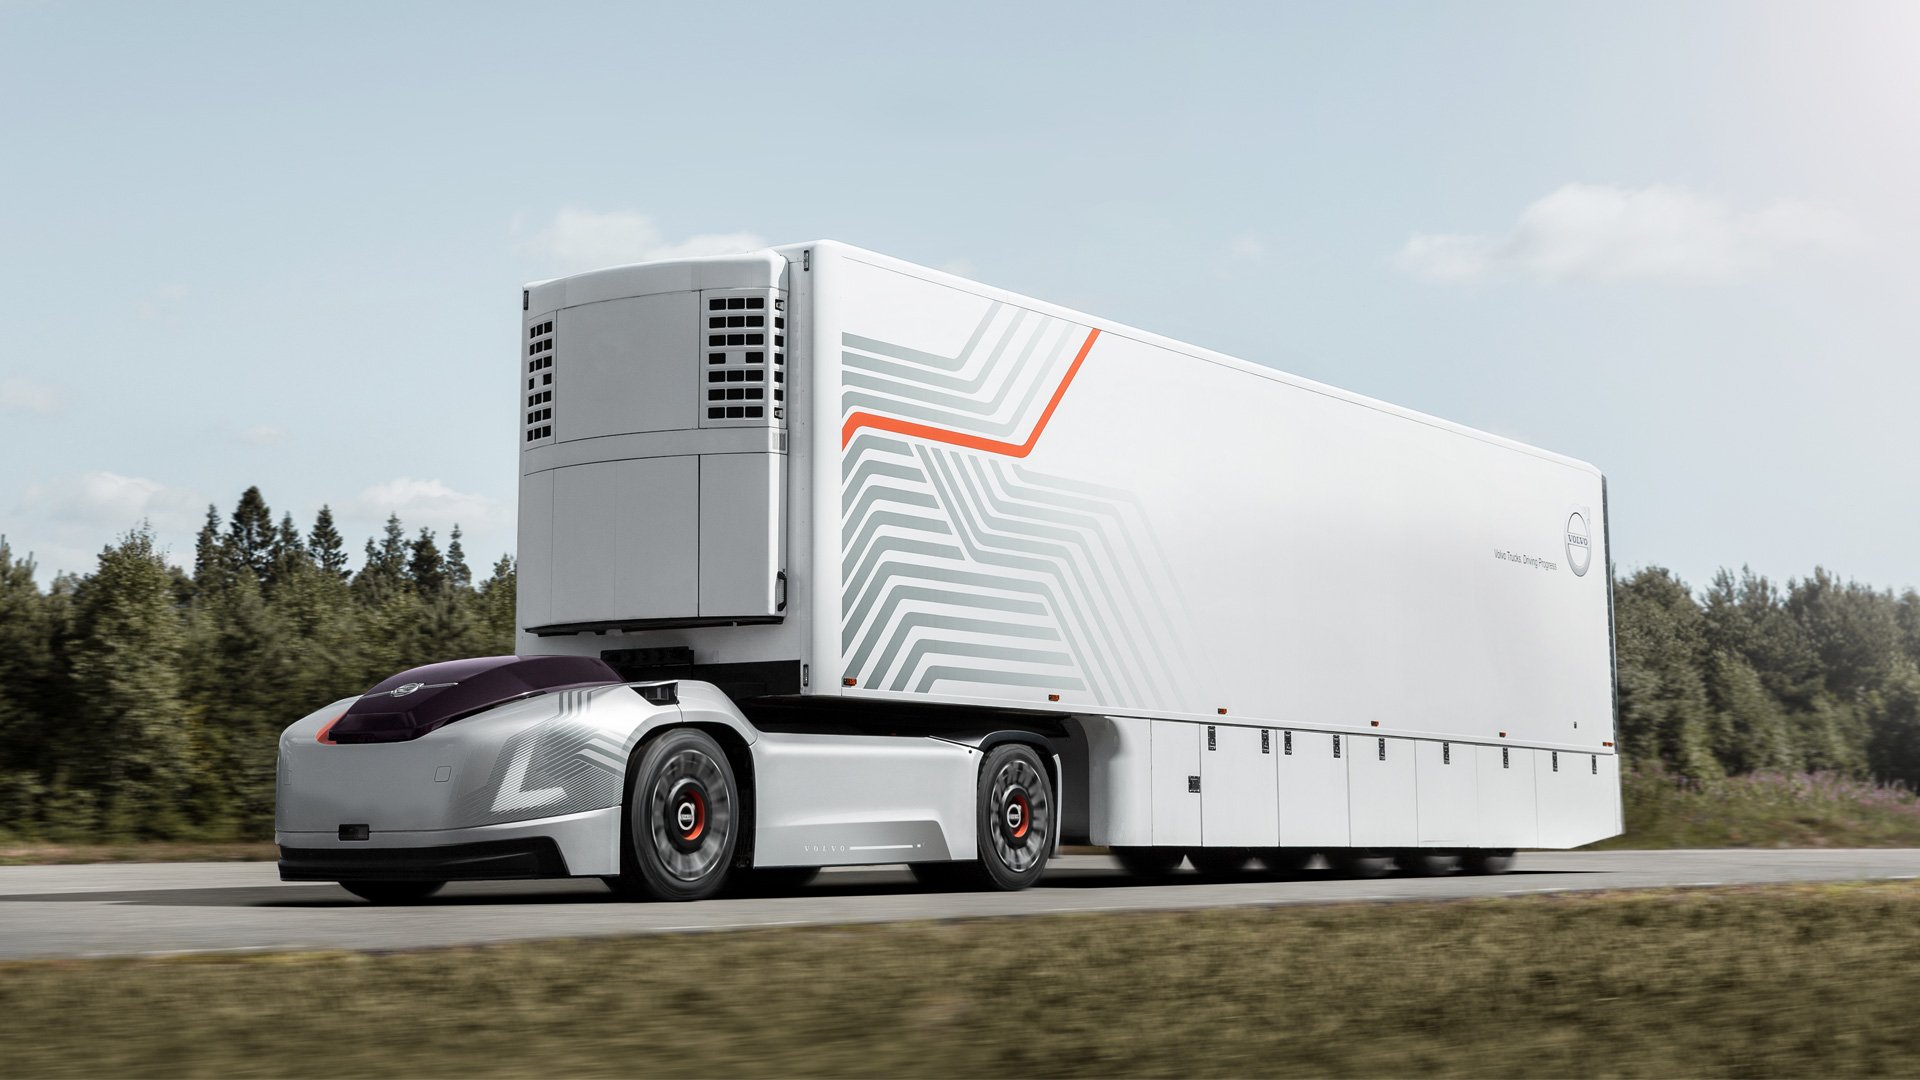 Volvo Trucks – Introducing Vera, the Future of Autonomous Transport